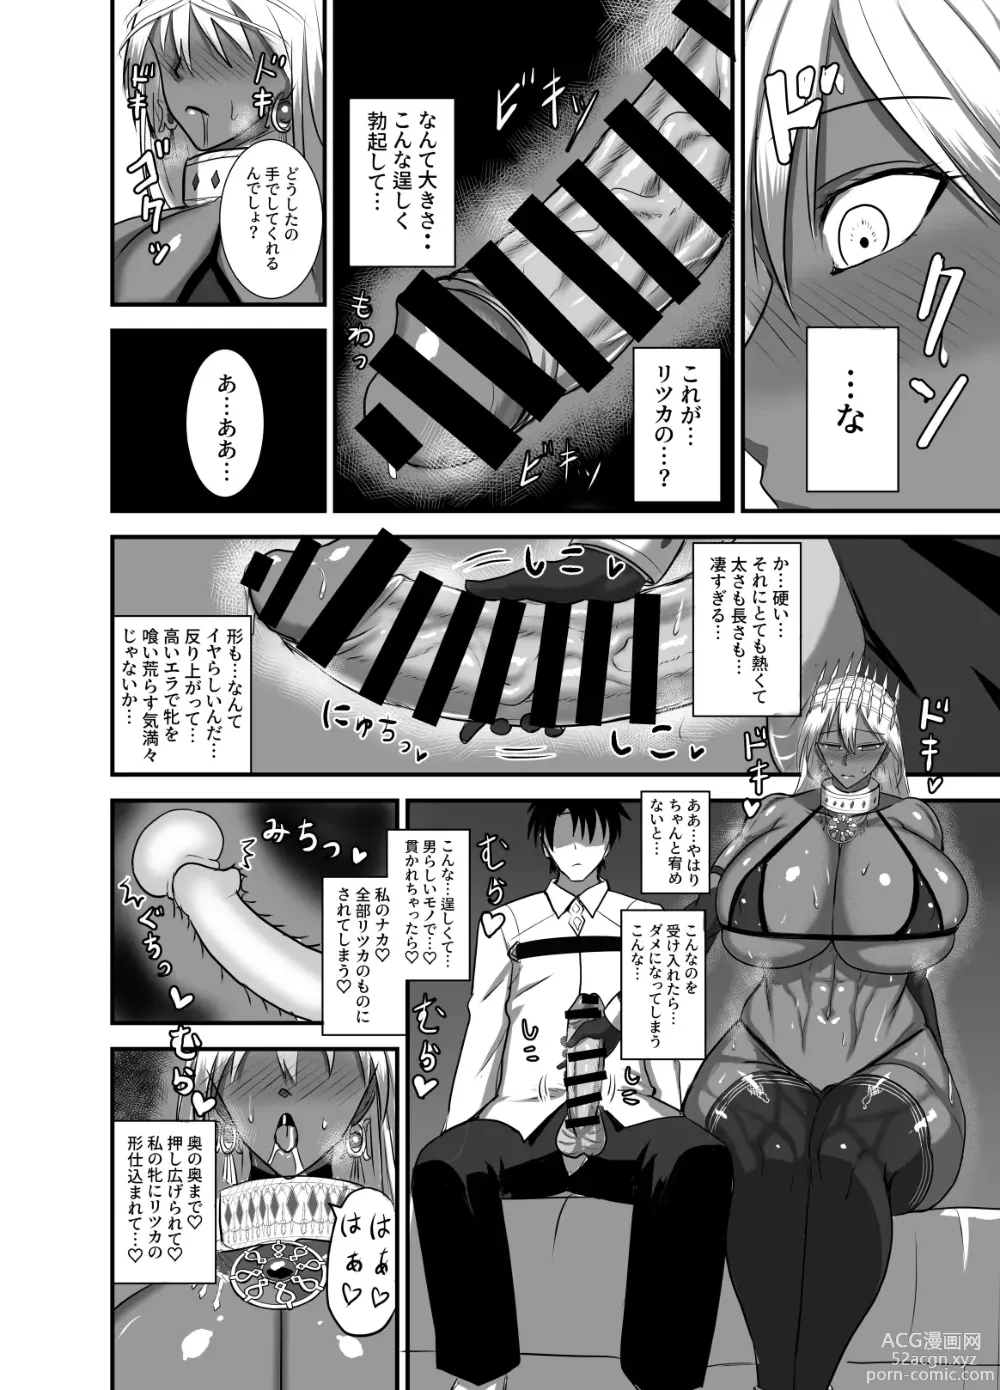 Page 7 of doujinshi Kore wa teishuku ihande wanai!